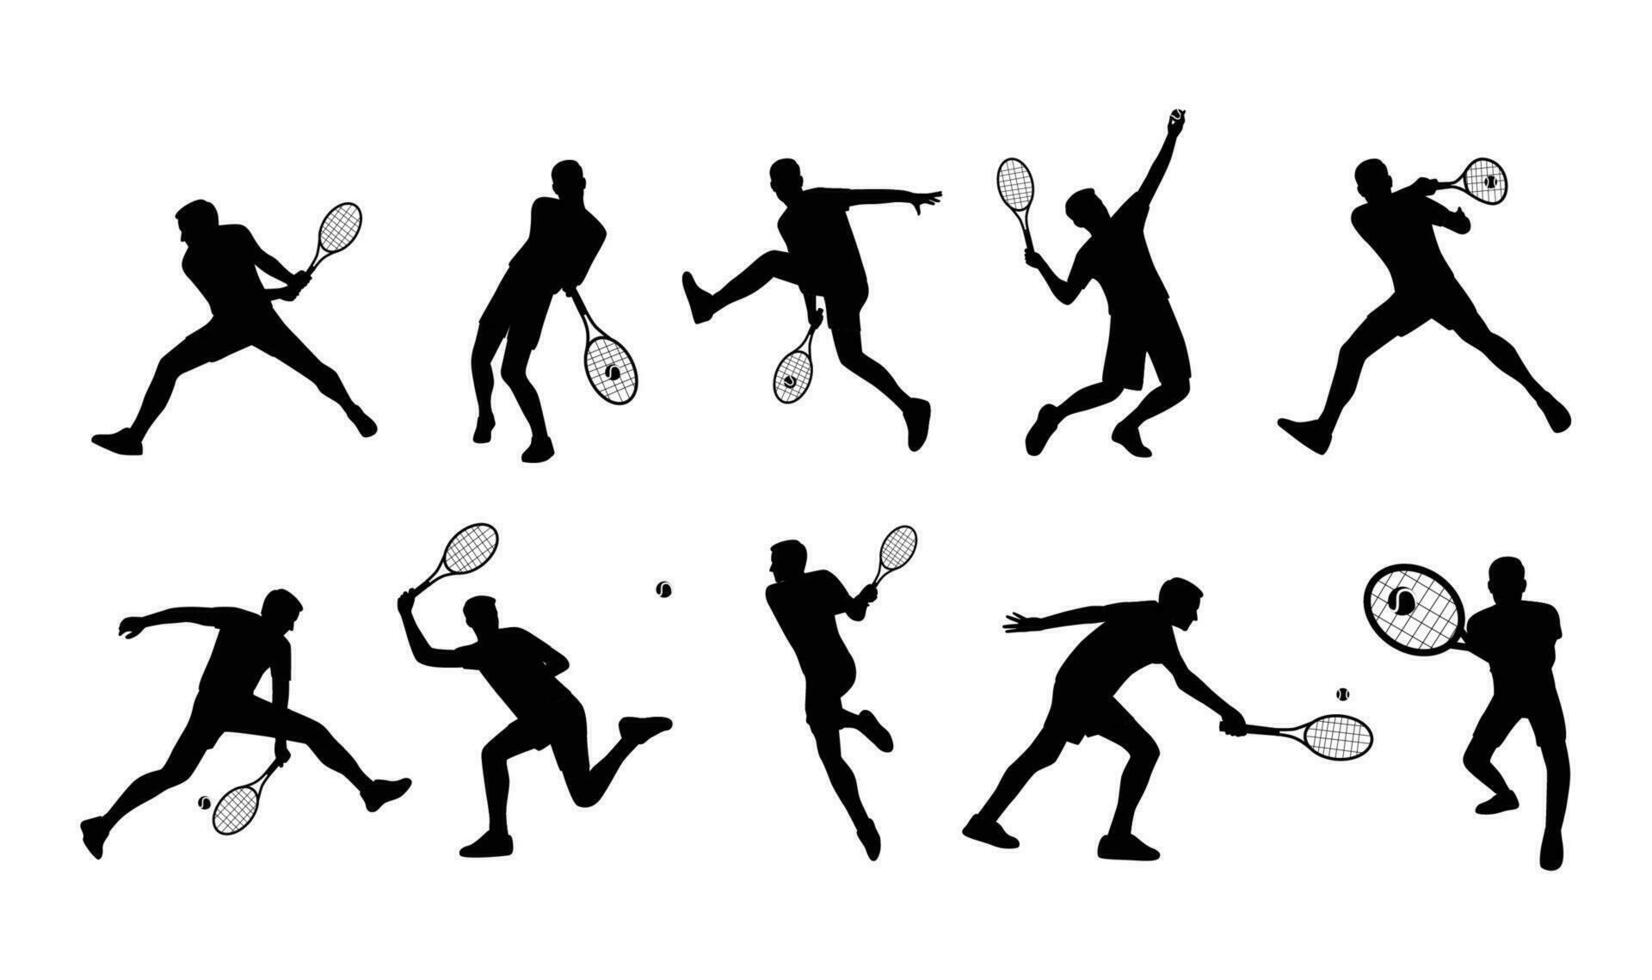 jung Mann spielen Tennis auf Gericht Satz. eben Vektor Illustration isoliert auf Weiß Hintergrund